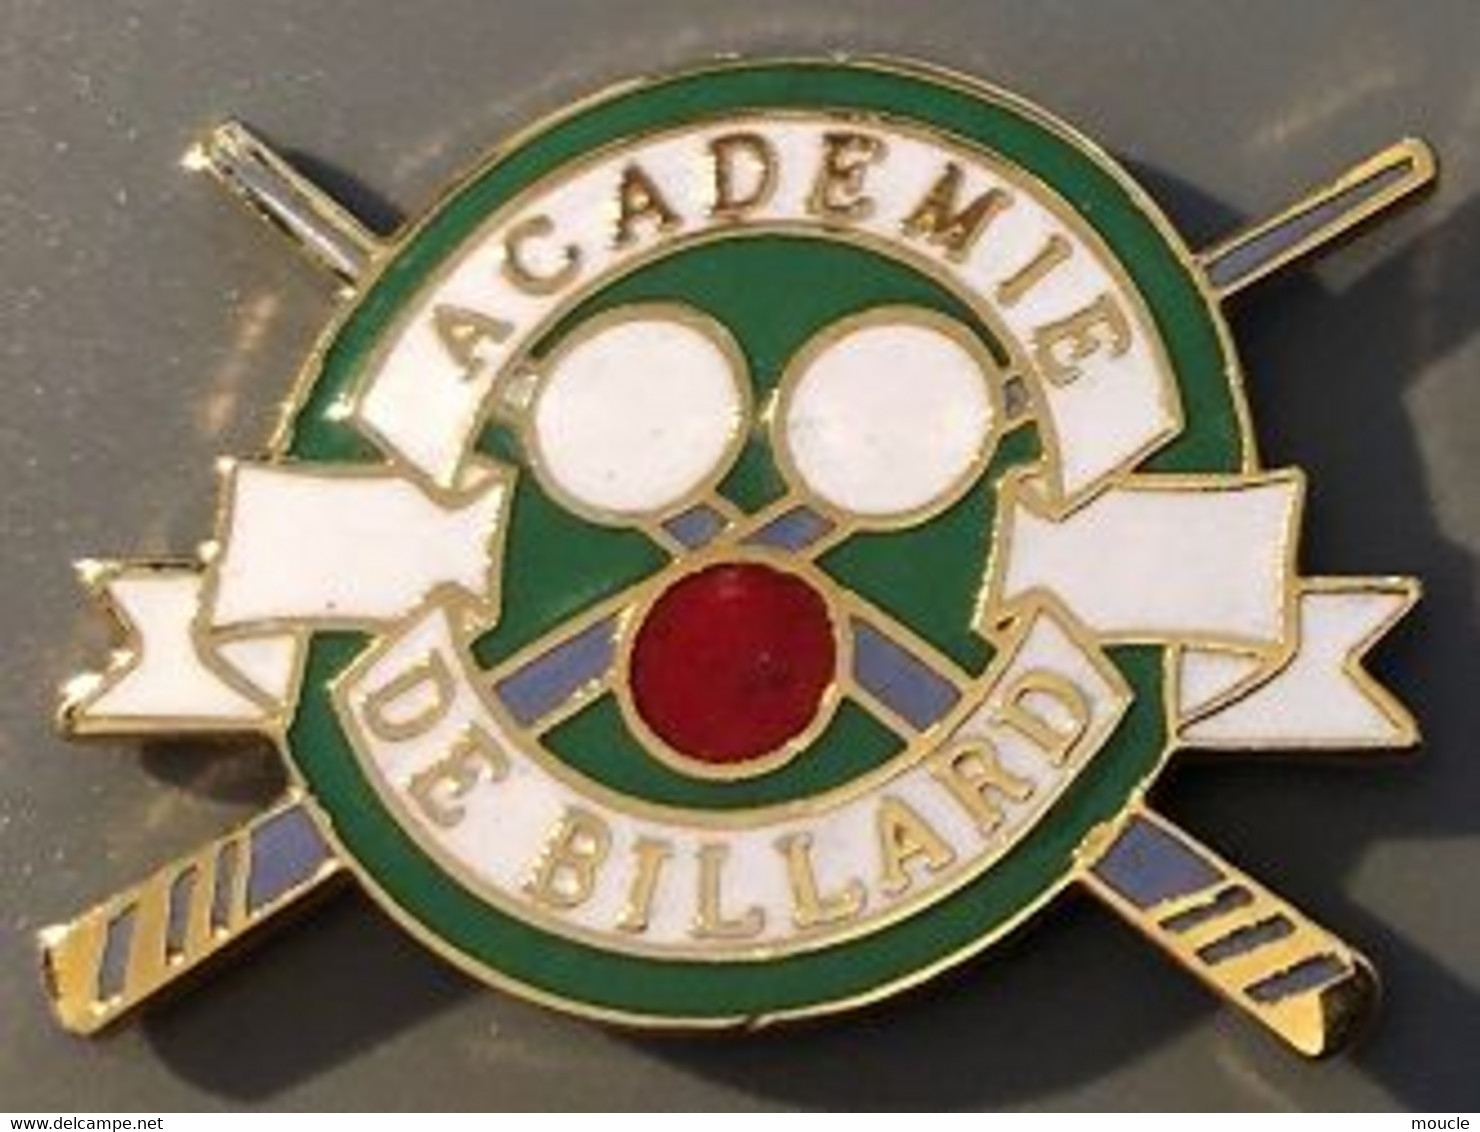 ACADEMIE DE BILLARD - BOULES - QUEUES - EGF -                 (14) - Billiards